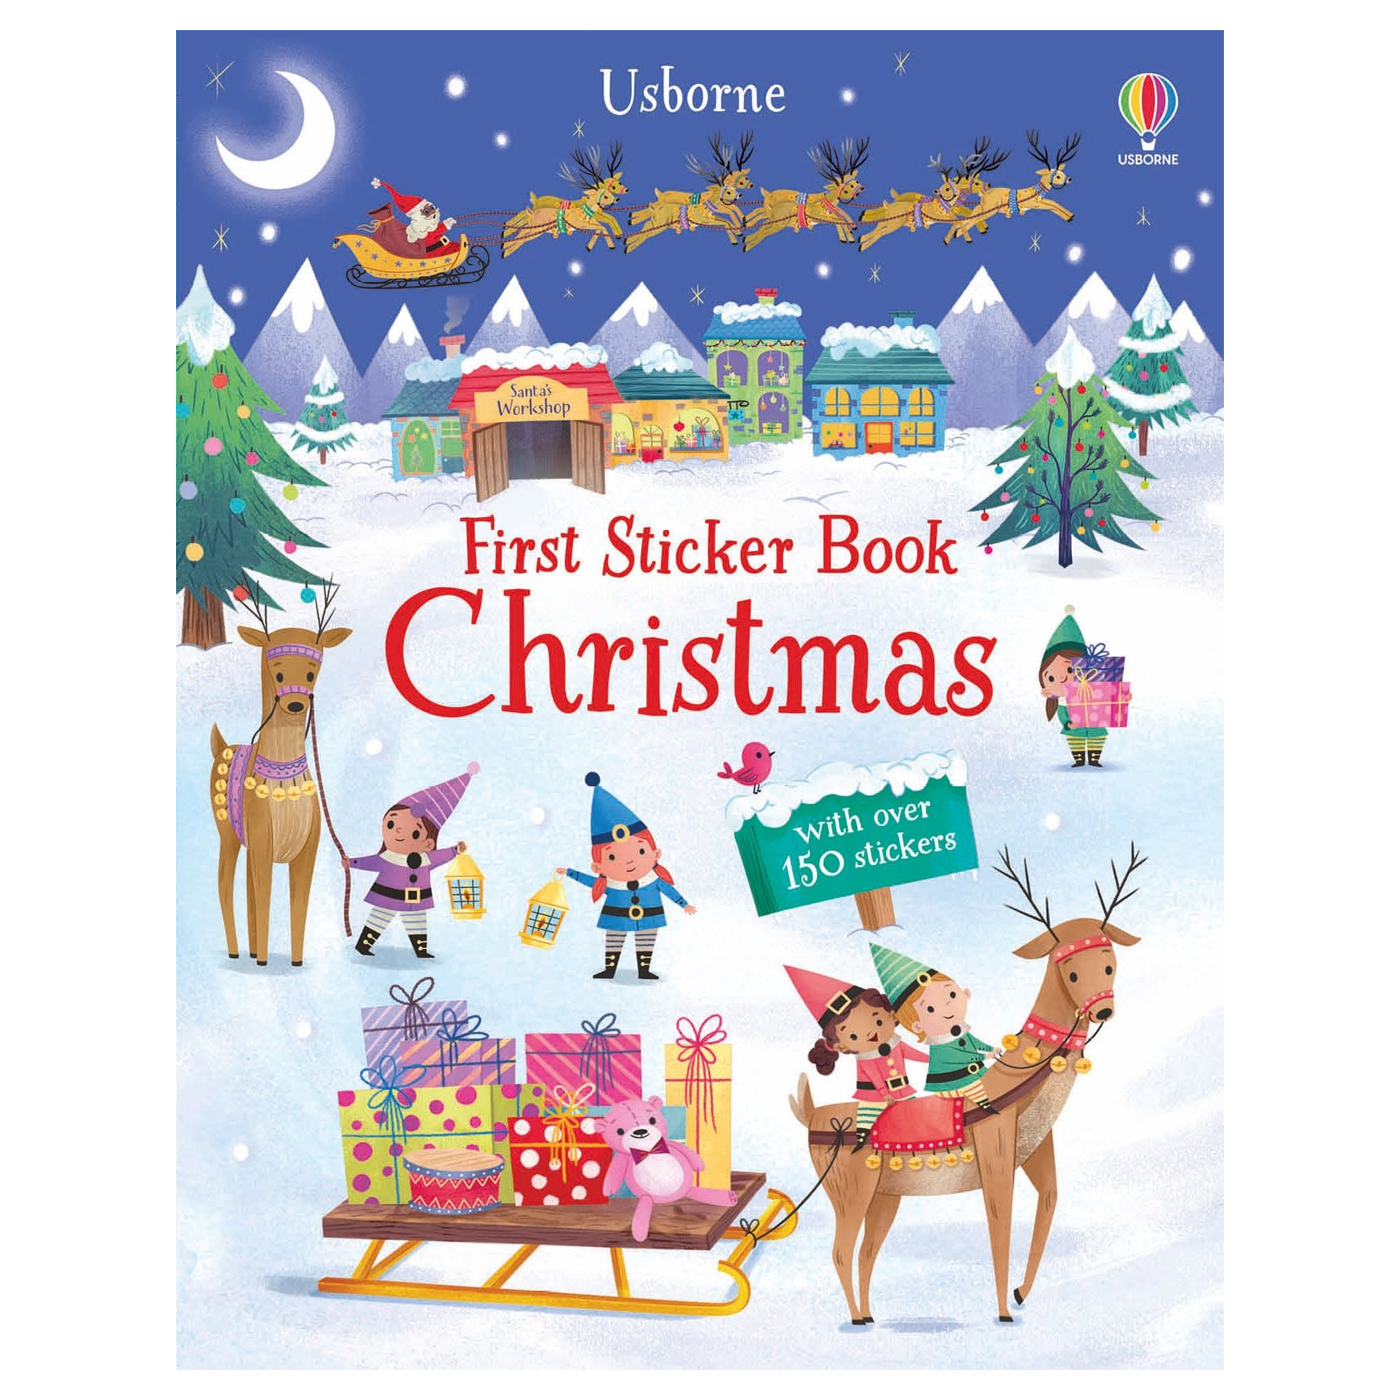  First Sticker Book Christmas